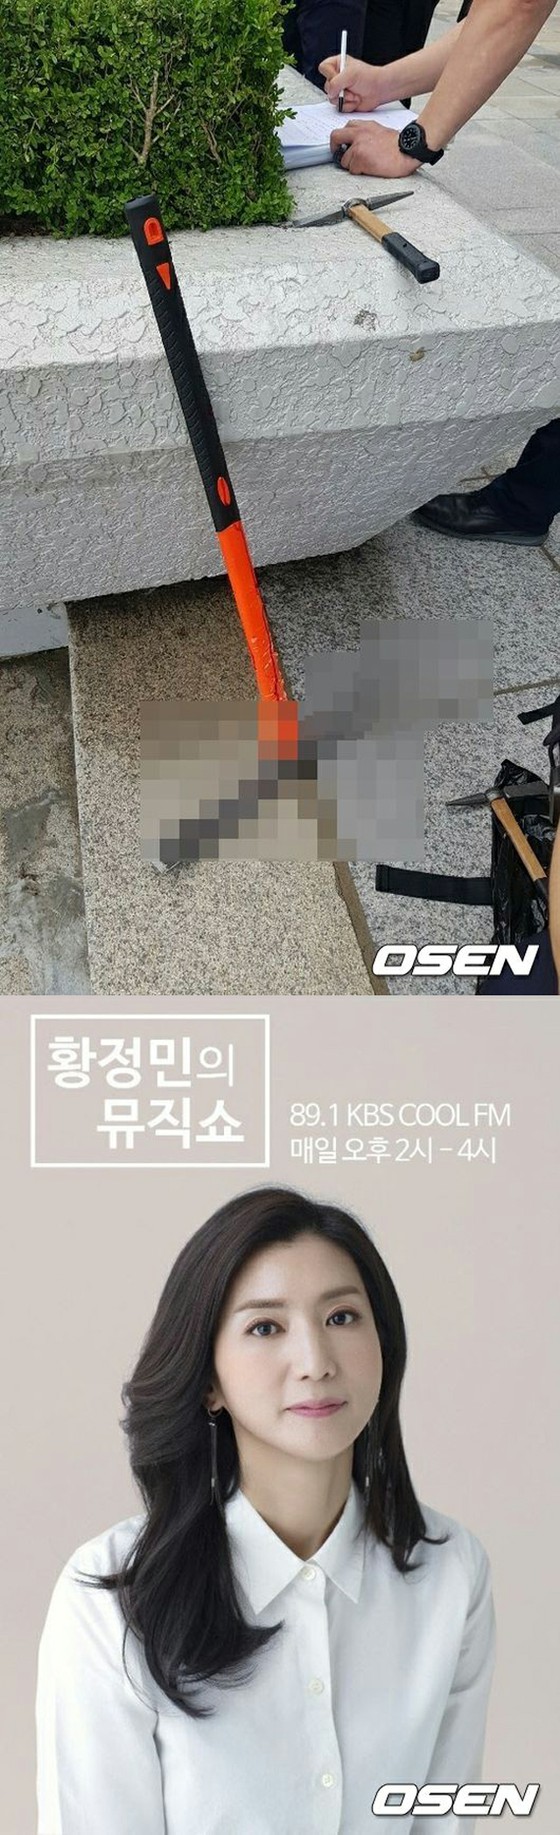 KBS, một trường hợp cửa sổ kính bị vỡ tại một phòng thu mở radio trong khi phát sóng trực tiếp ... Một cảnh gây sốc mà không làm tổn hại đến tính mạng